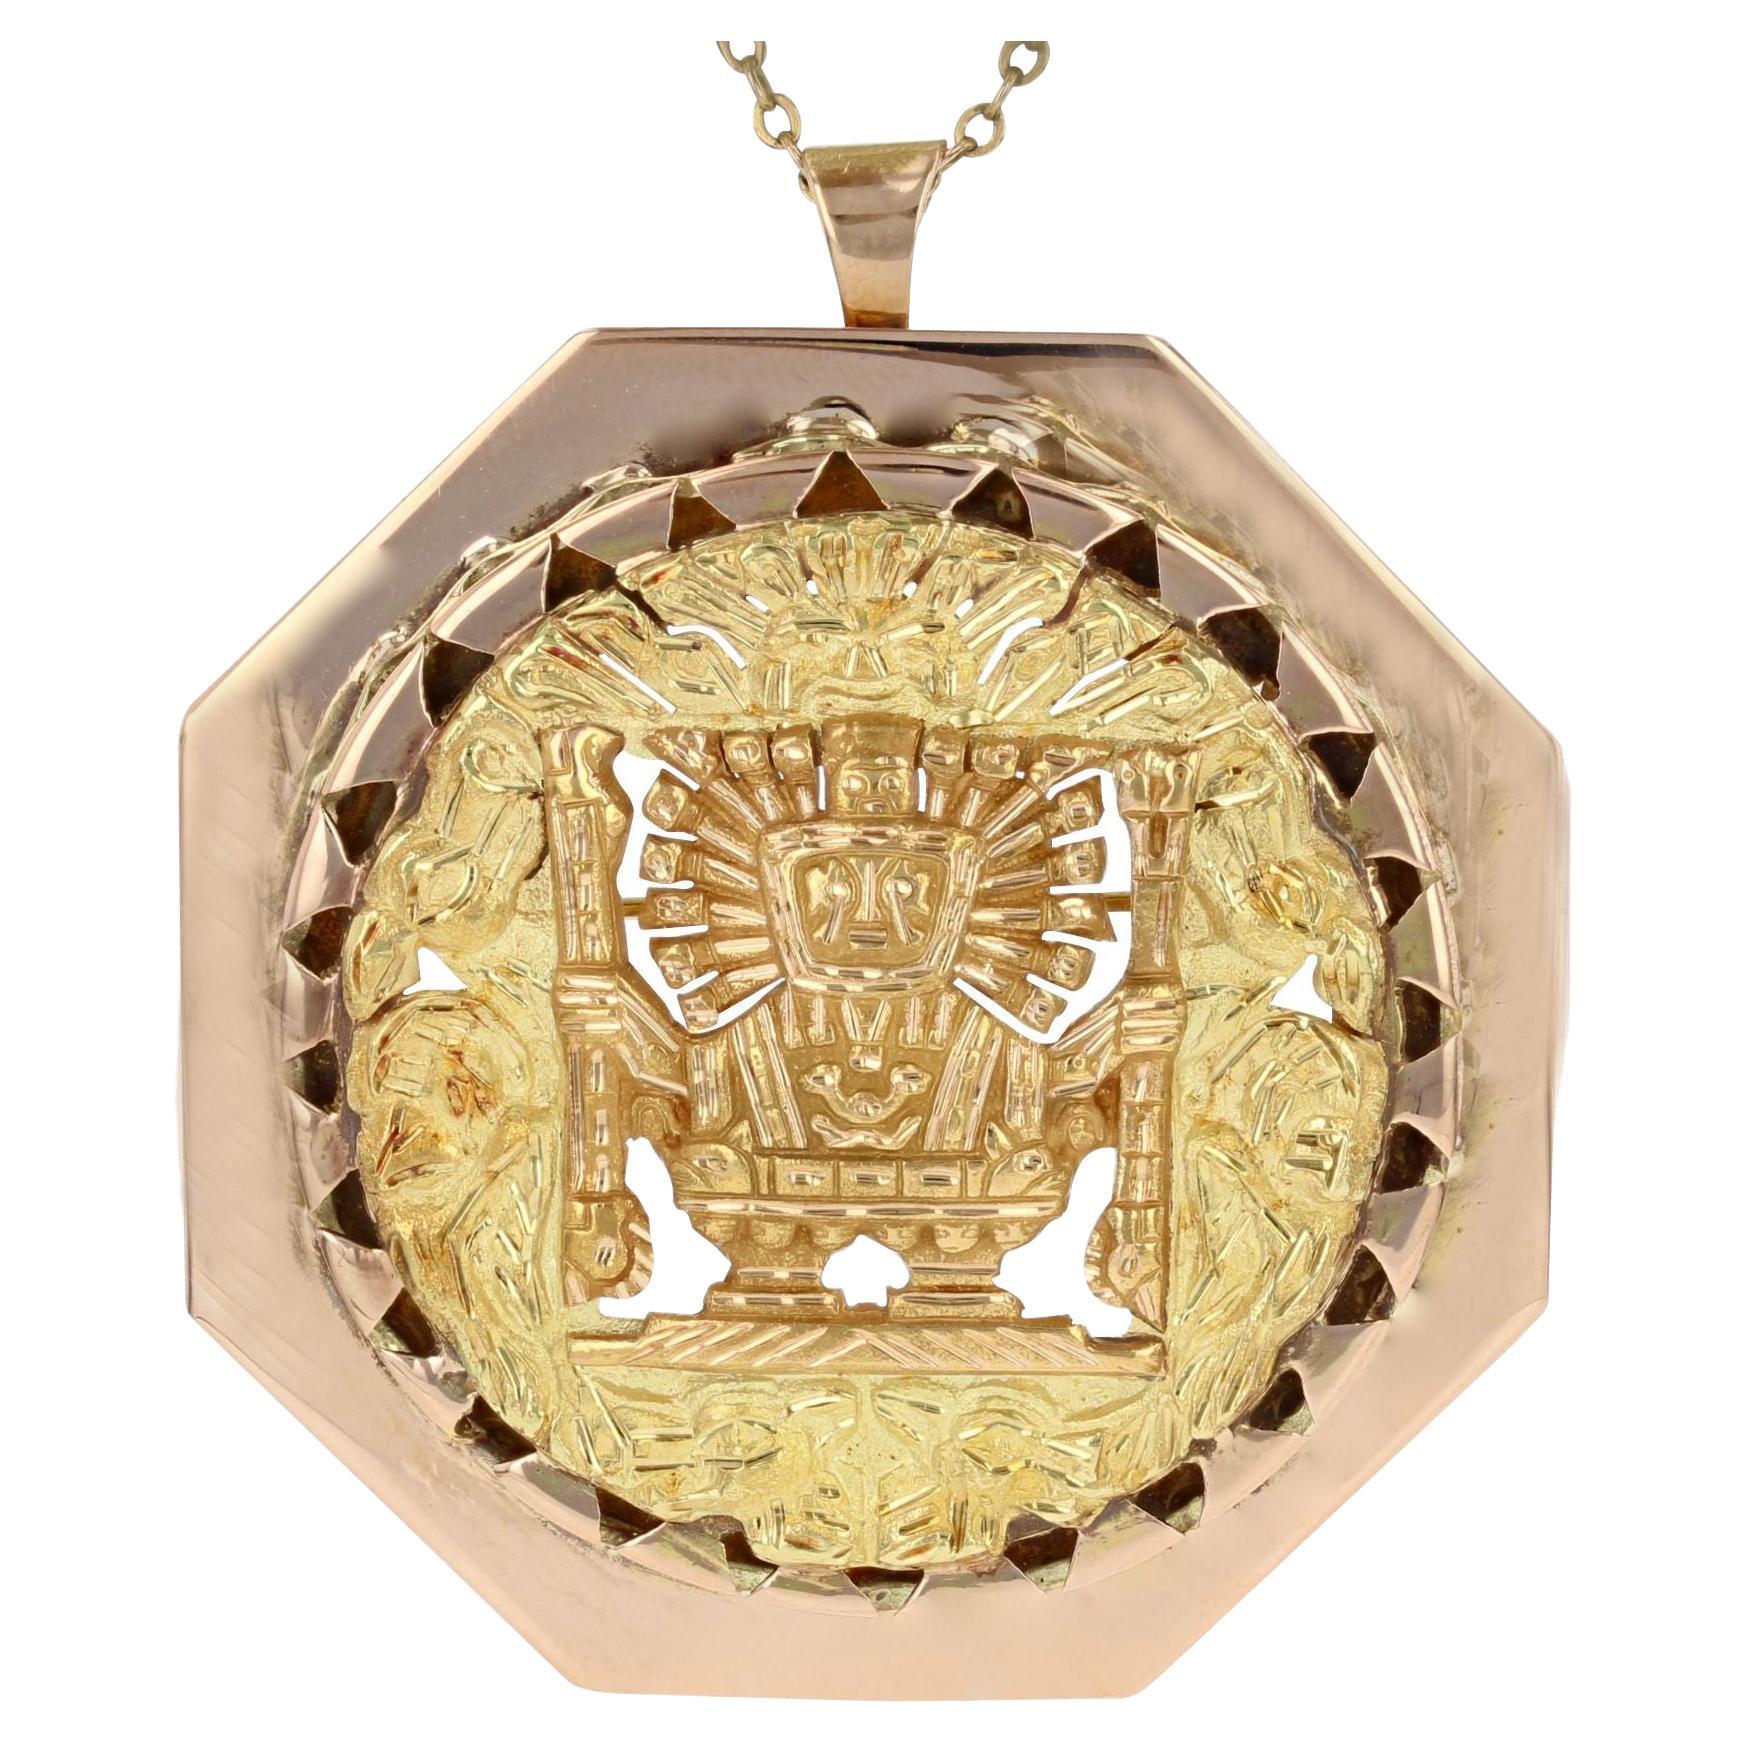 Moderno Broche Colgante Estilo Azteca de Oro Amarillo y Rosa de 18 Kilates